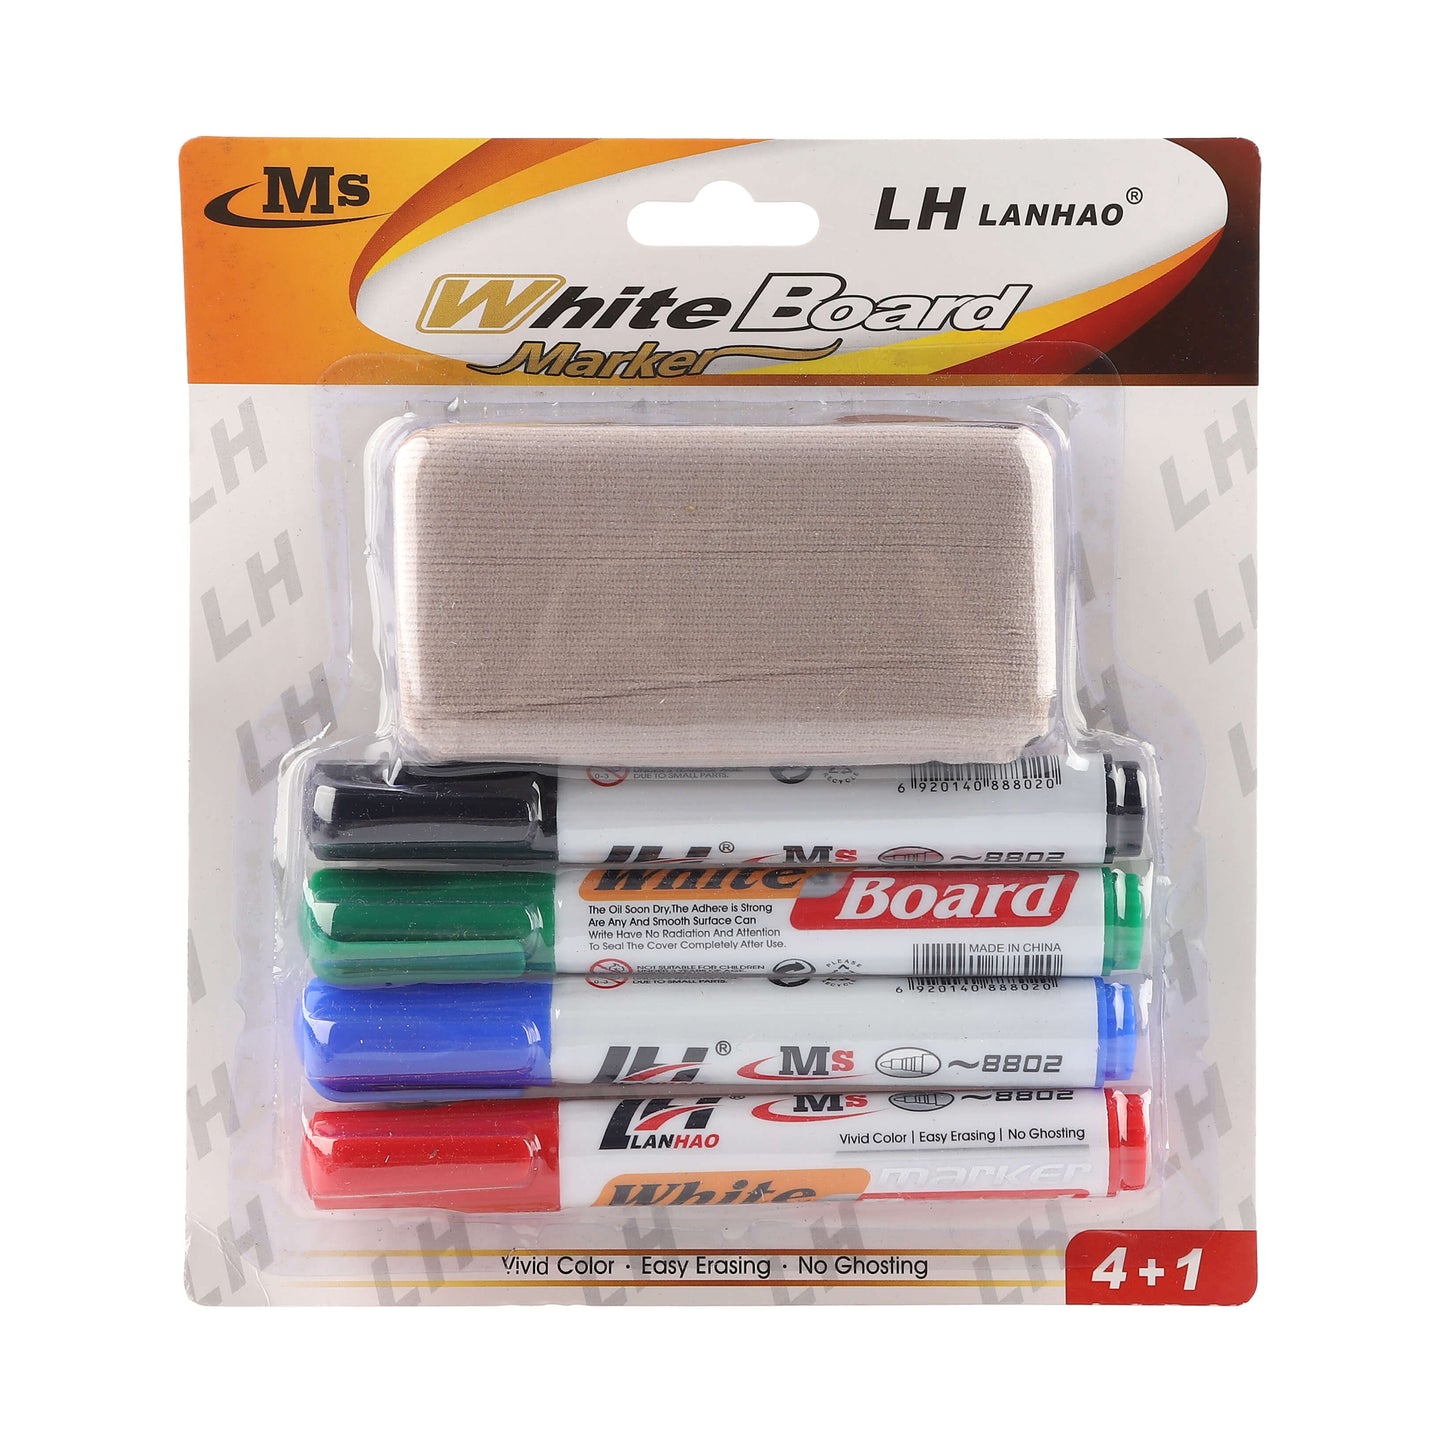 White-Board Marker + Eraser